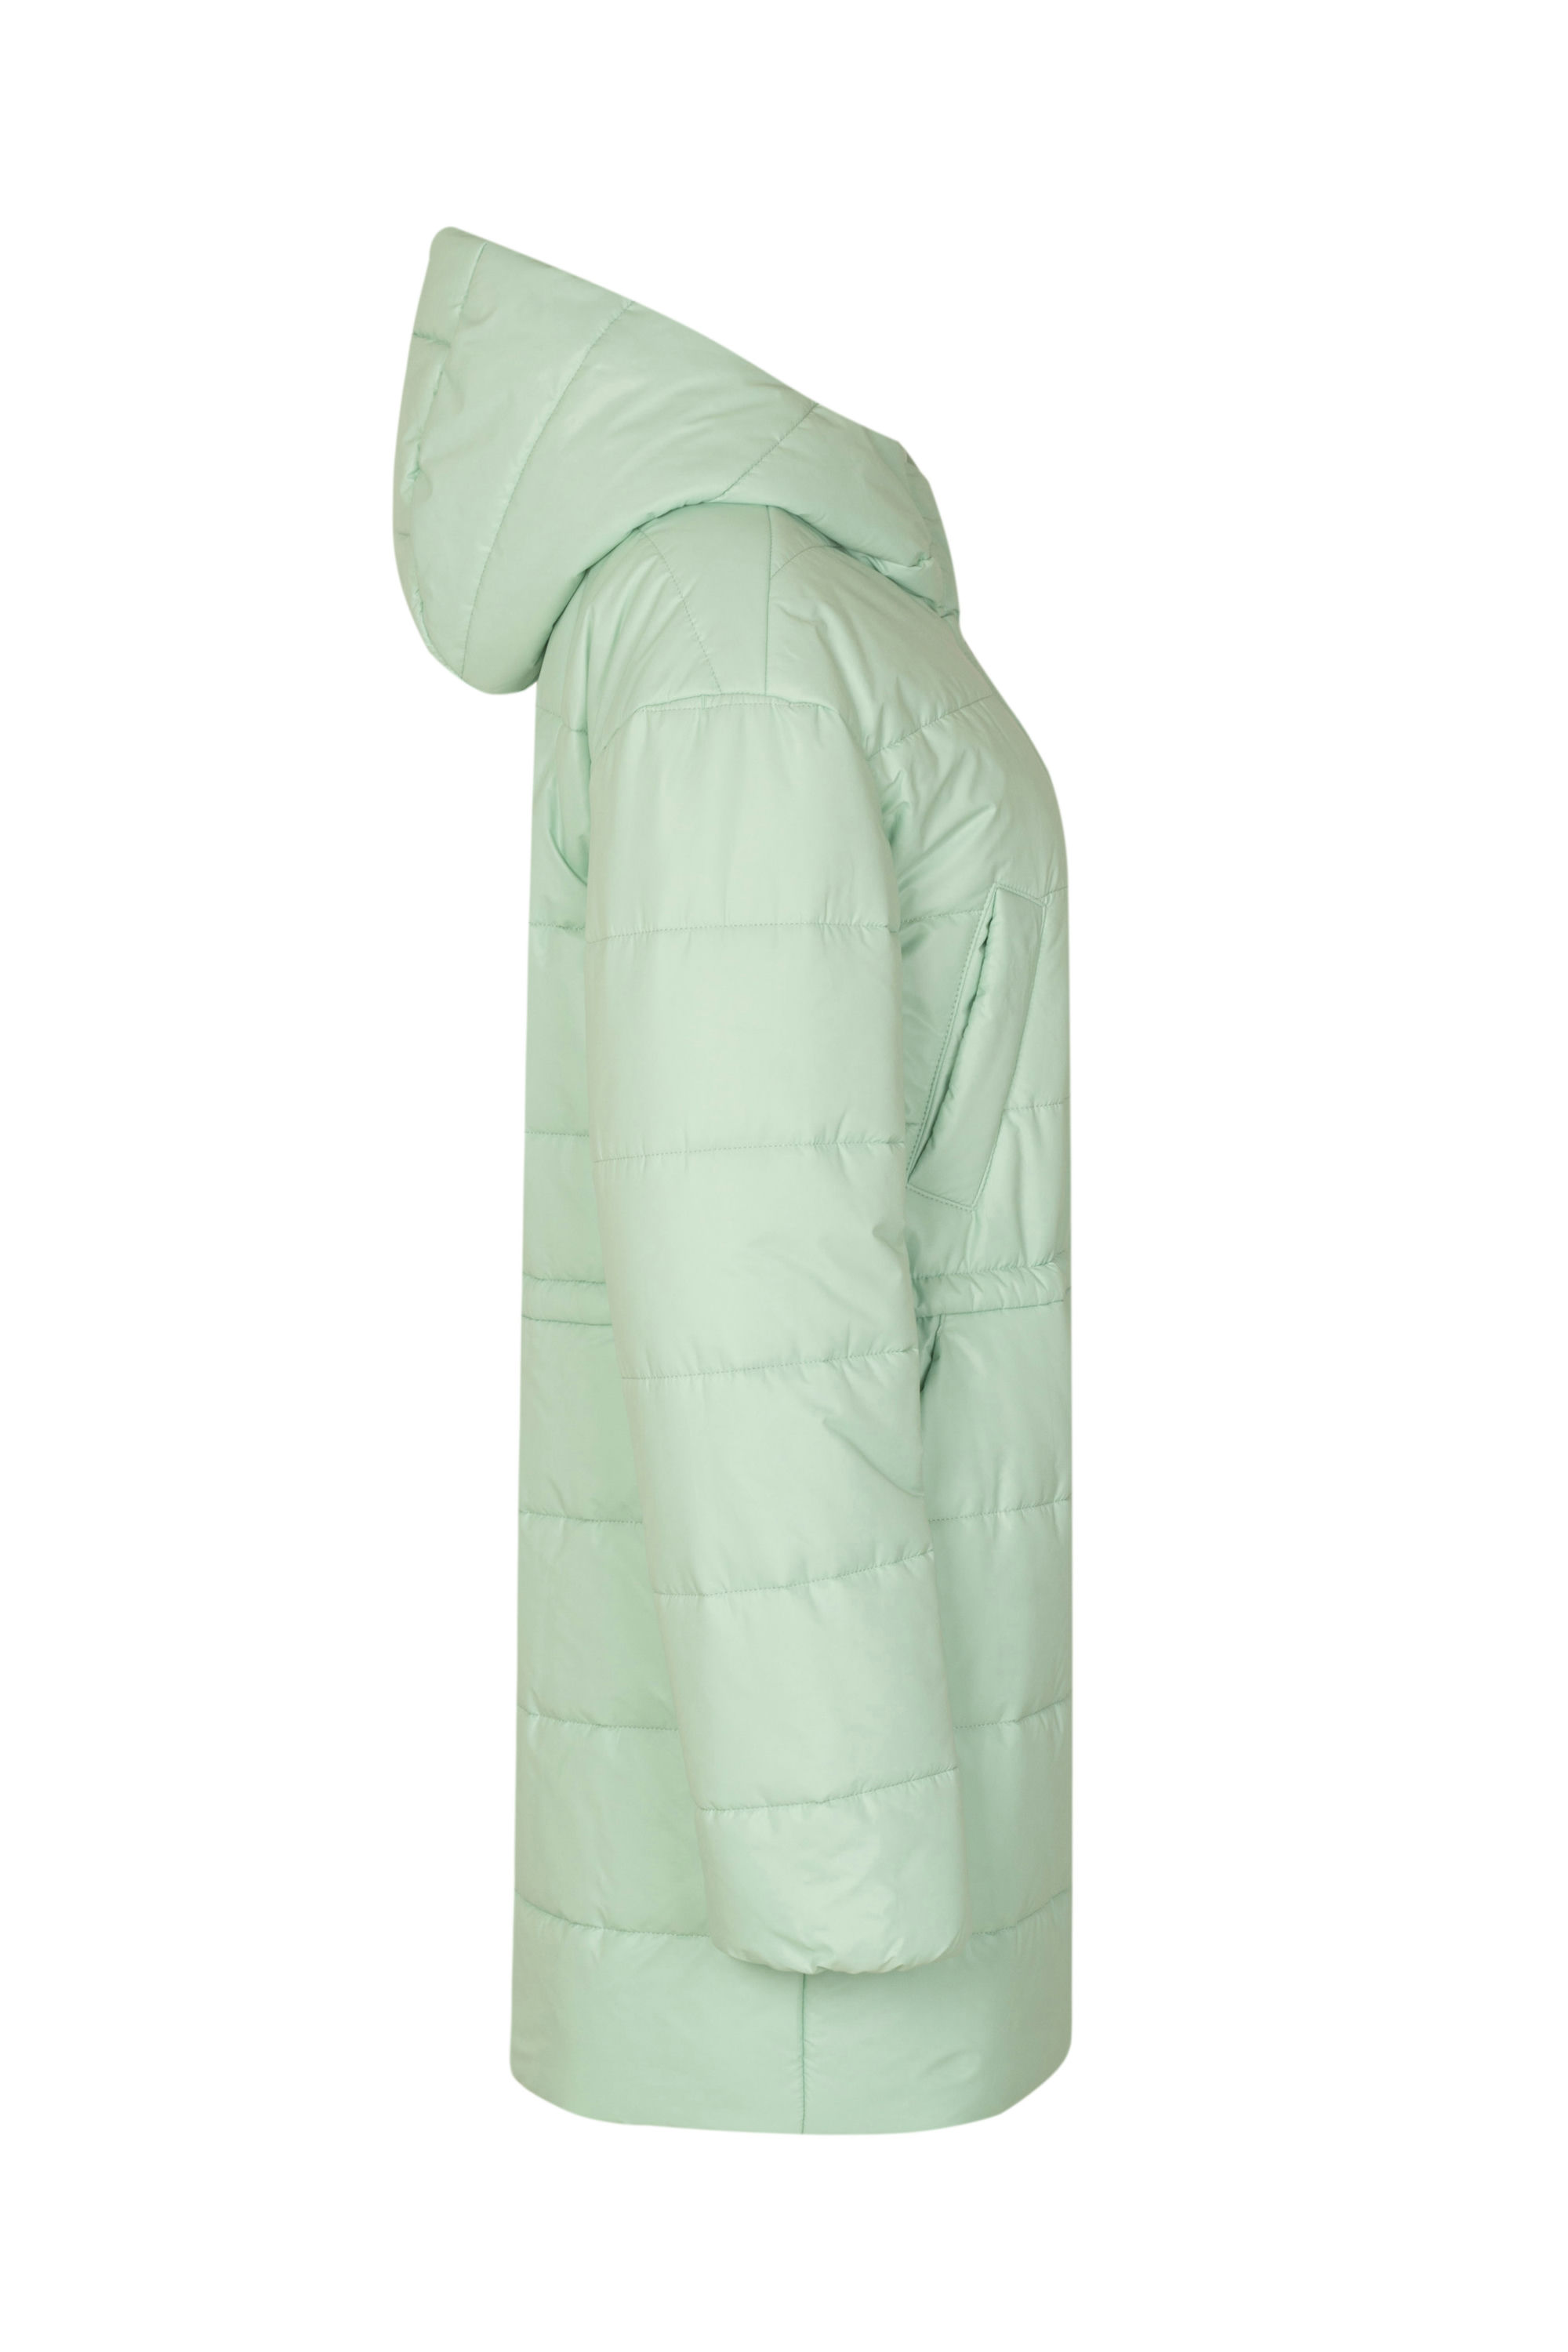 Пальто женское плащевое утепленное 5-13121-1. Фото 2.